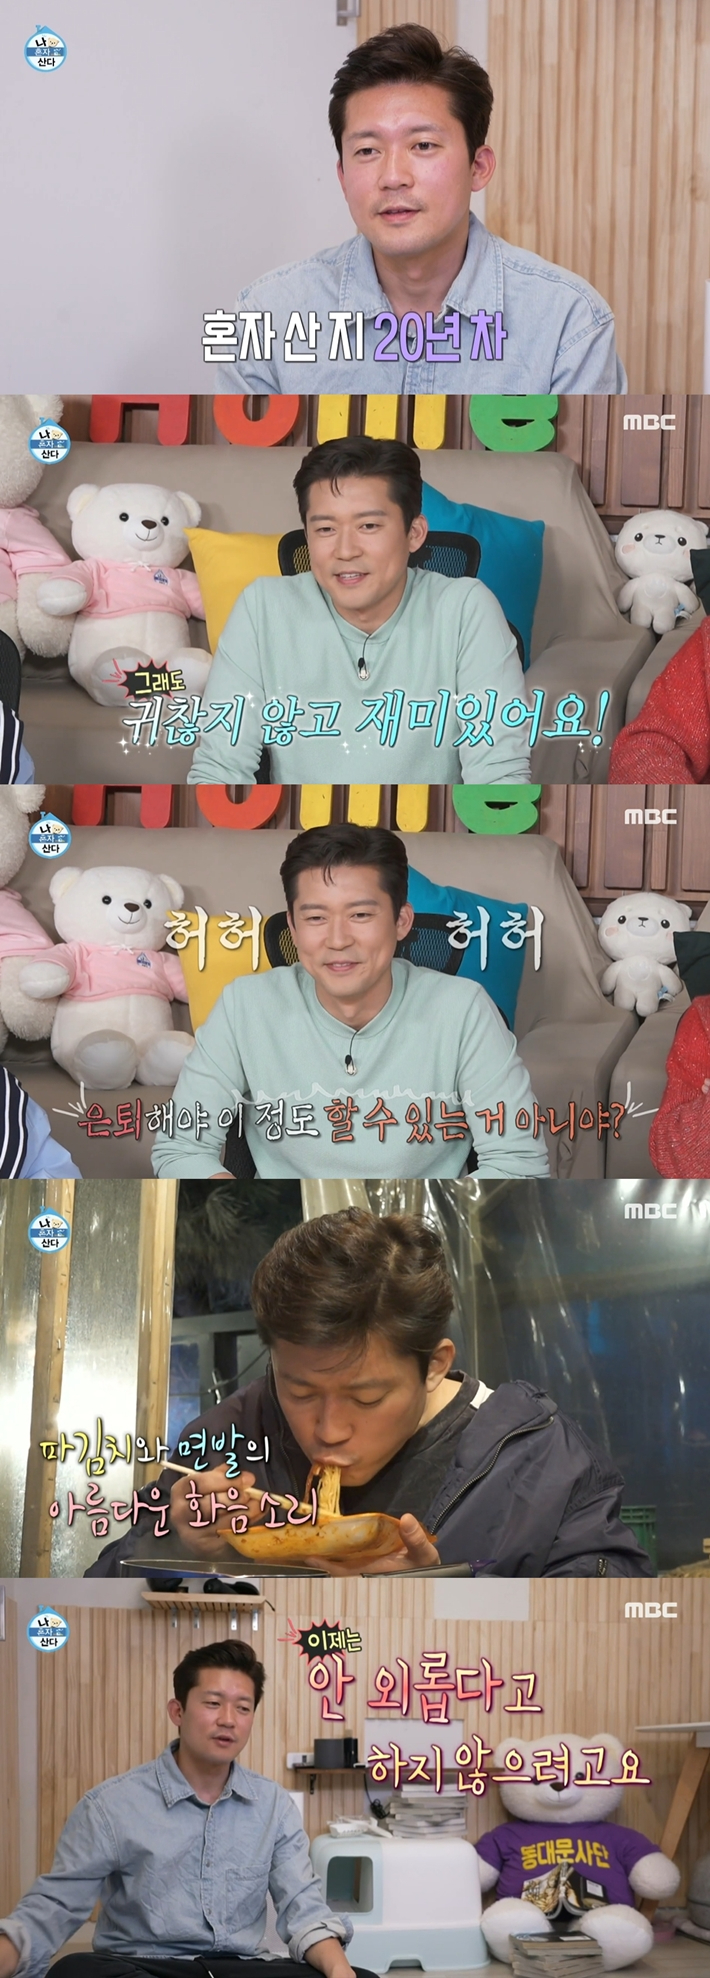 21일 방송한 MBC '나 혼자 산다'에 출연한 김대호 아나운서. '나 혼자 산다' 캡처